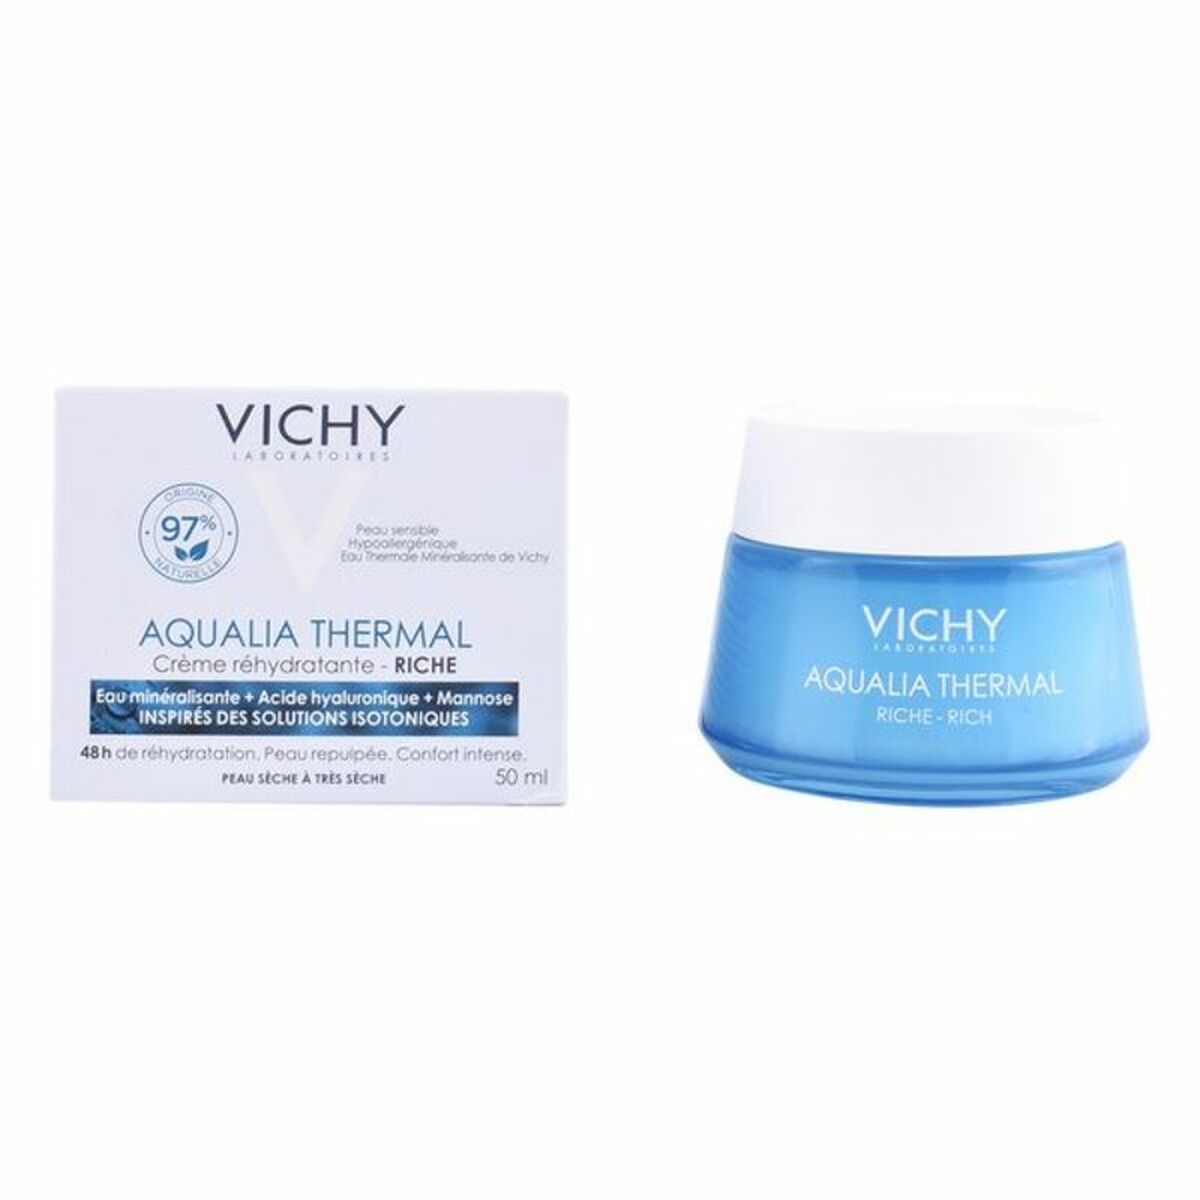 Hydrating Cream Aqualia Thermal Vichy 3337875588225 (50 ml)-0